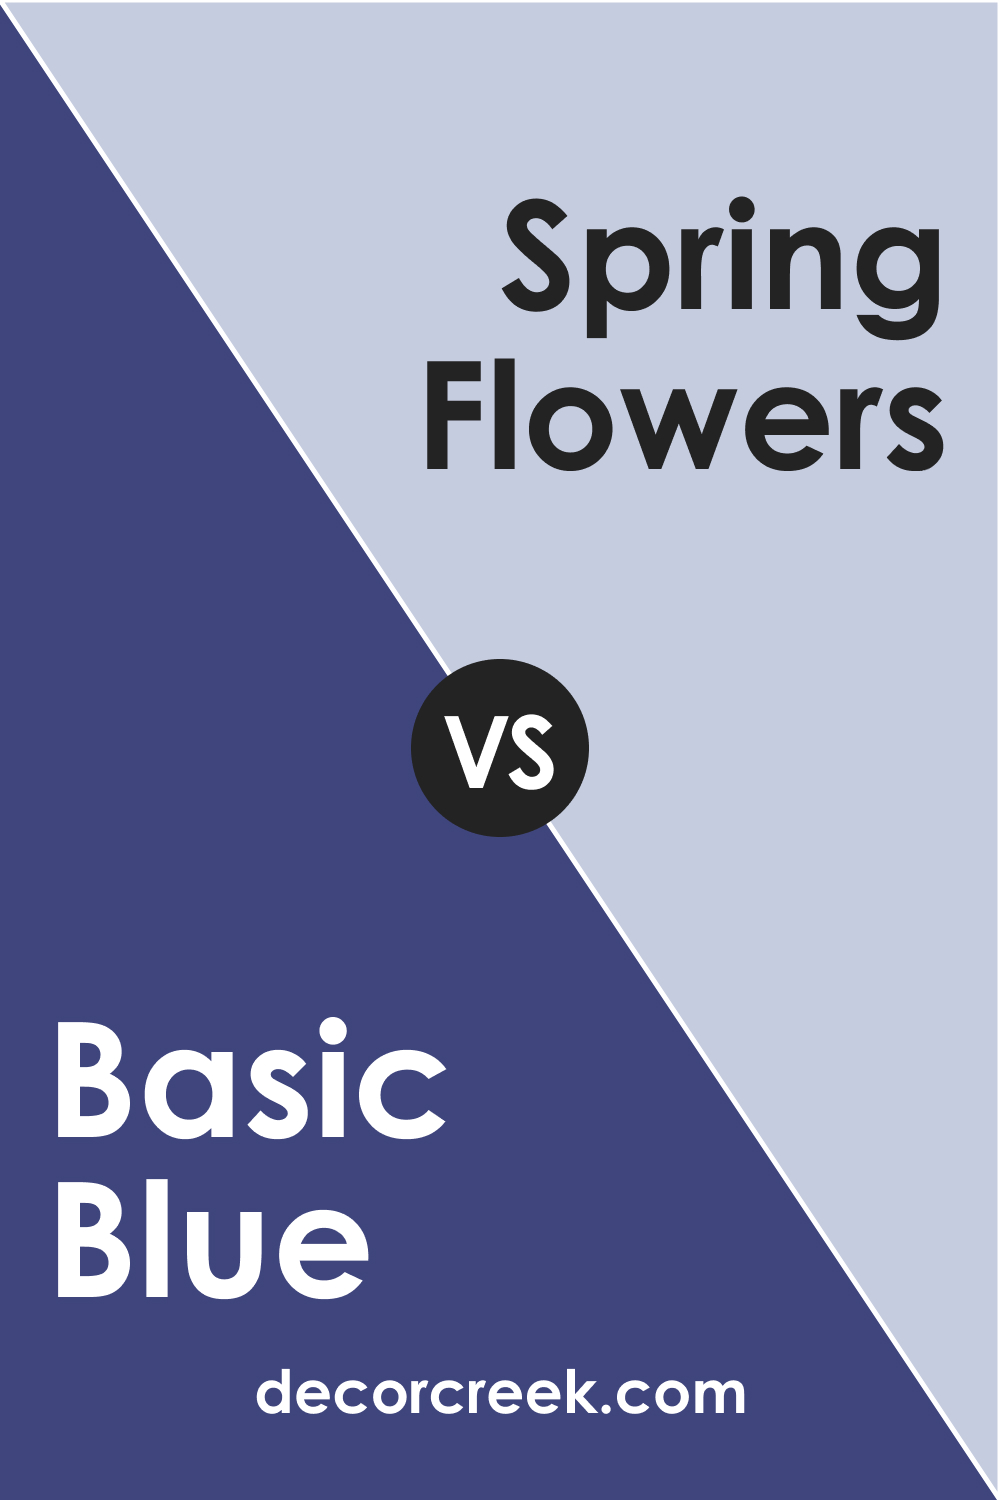 Basic Blue CC-968 vs. BM 1430 Spring Flowers